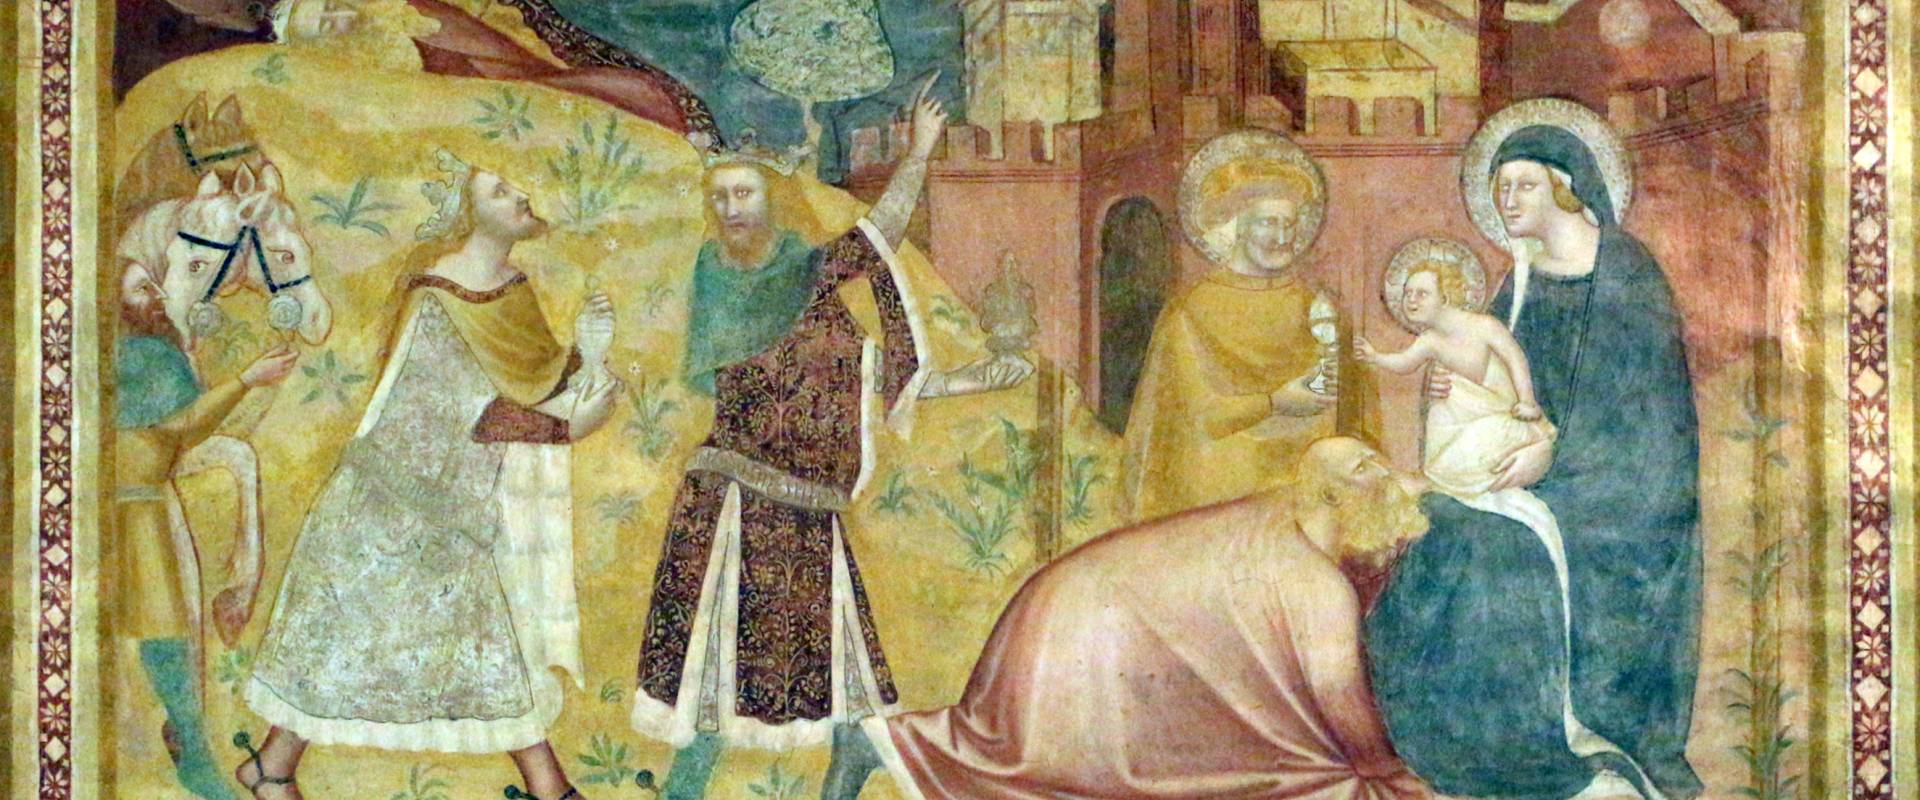 Scuola bolognese, ciclo dell'abbazia di pomposa, 1350 ca., nuovo testamento, 03 adorazione dei magi 1 photo by Sailko